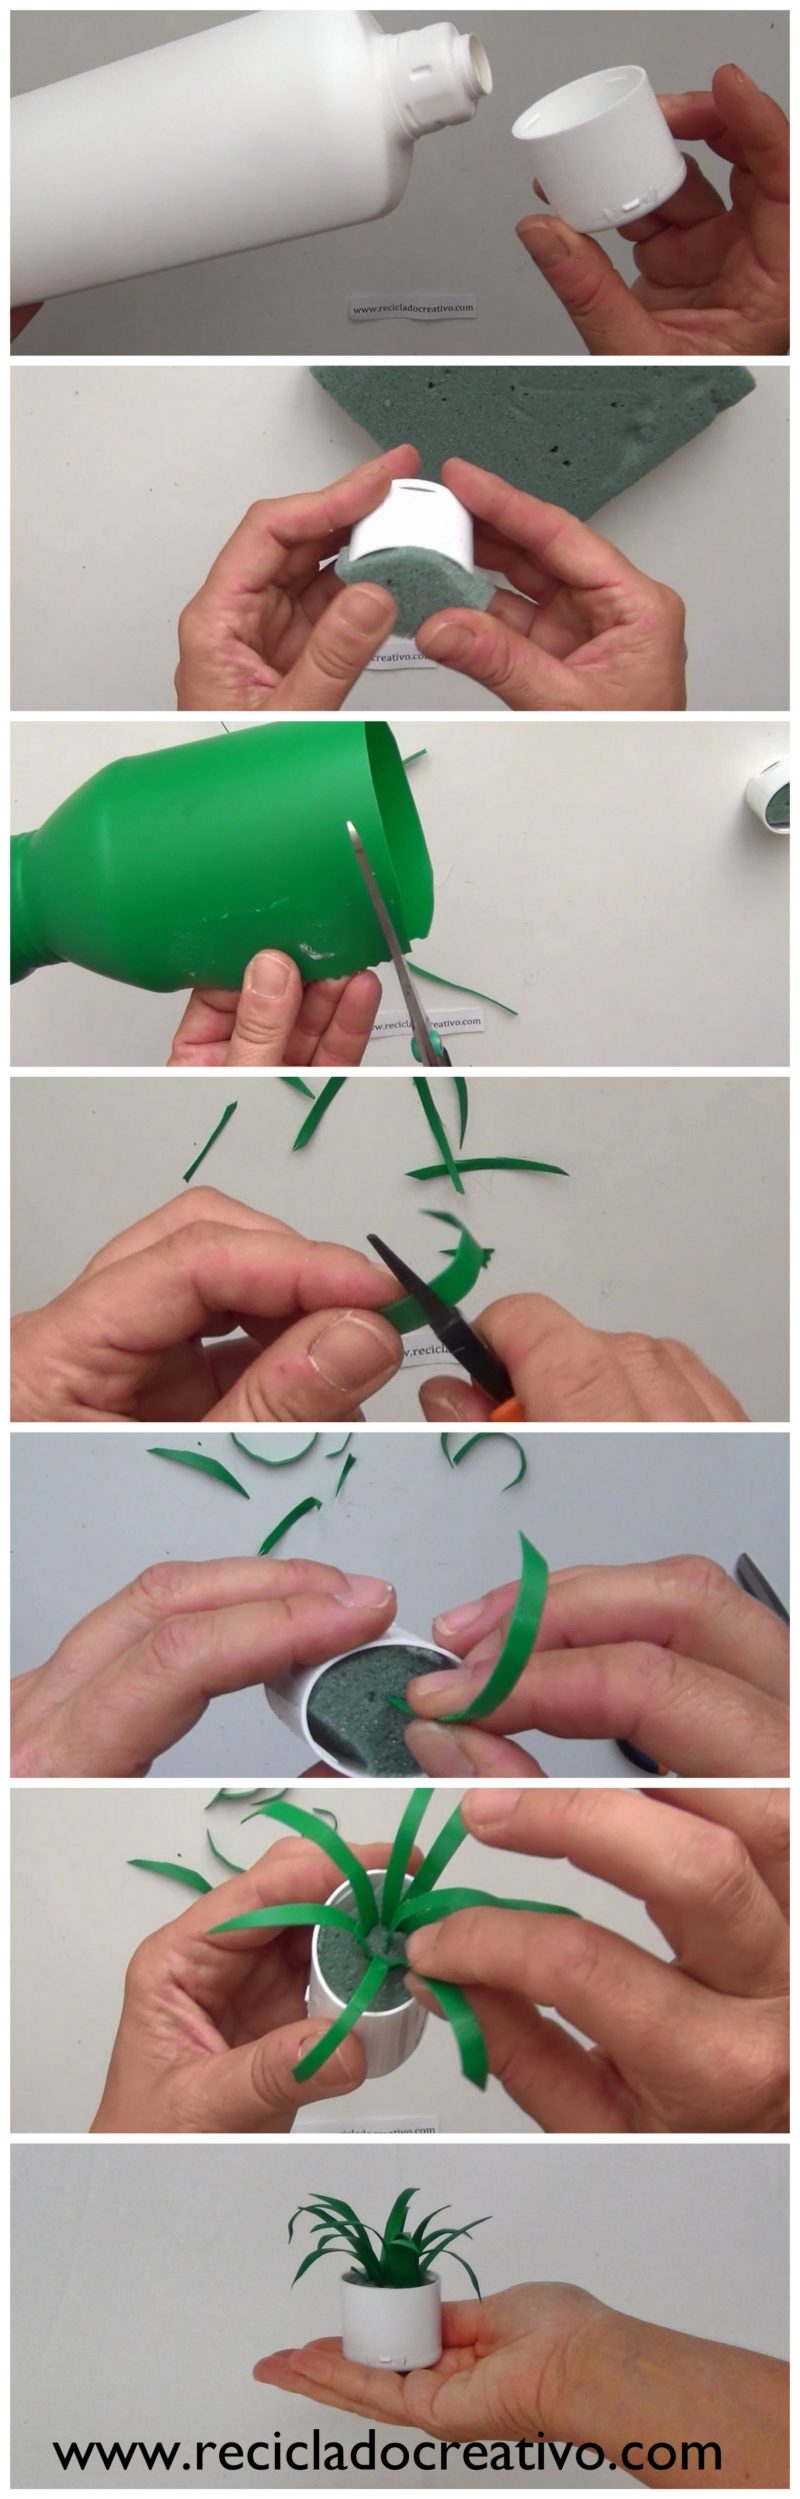 DIY Miniatura de planta de hojas cintas con botellas de plástico